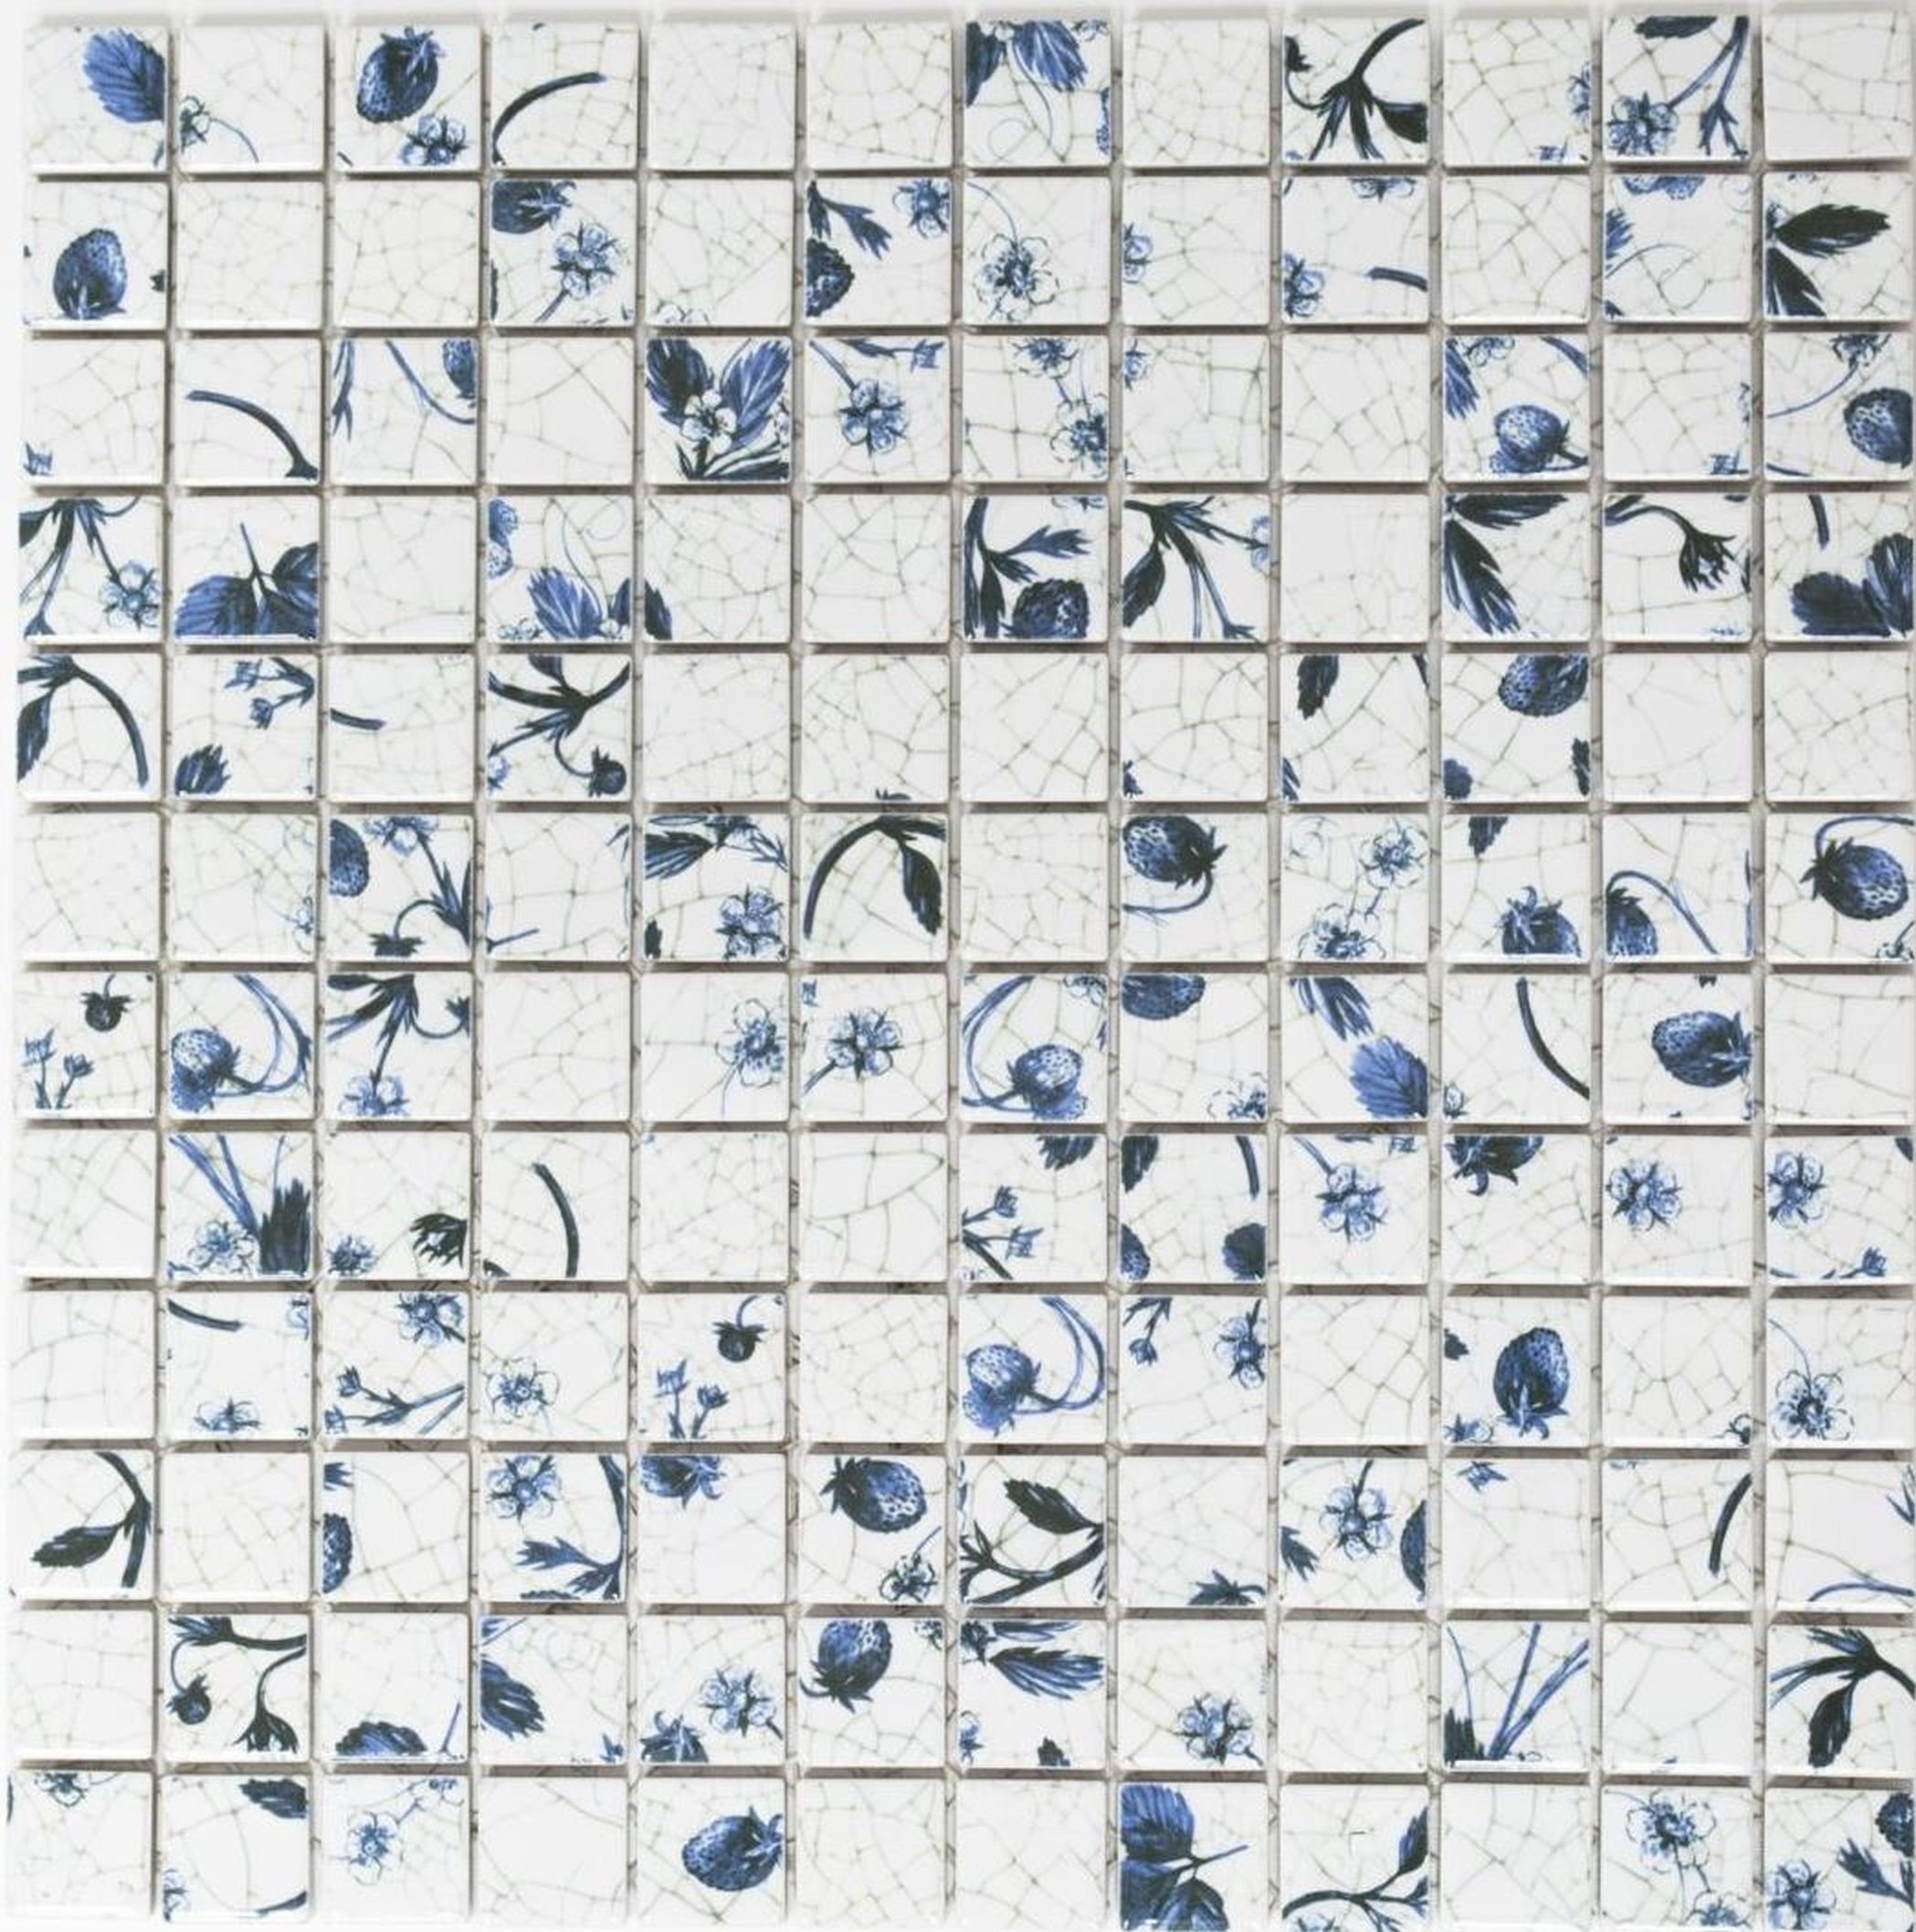 Mosani Mosaikfliesen Keramik Mosaik weiß Küche blaue Retro Vintage Mosaikfliese Blume